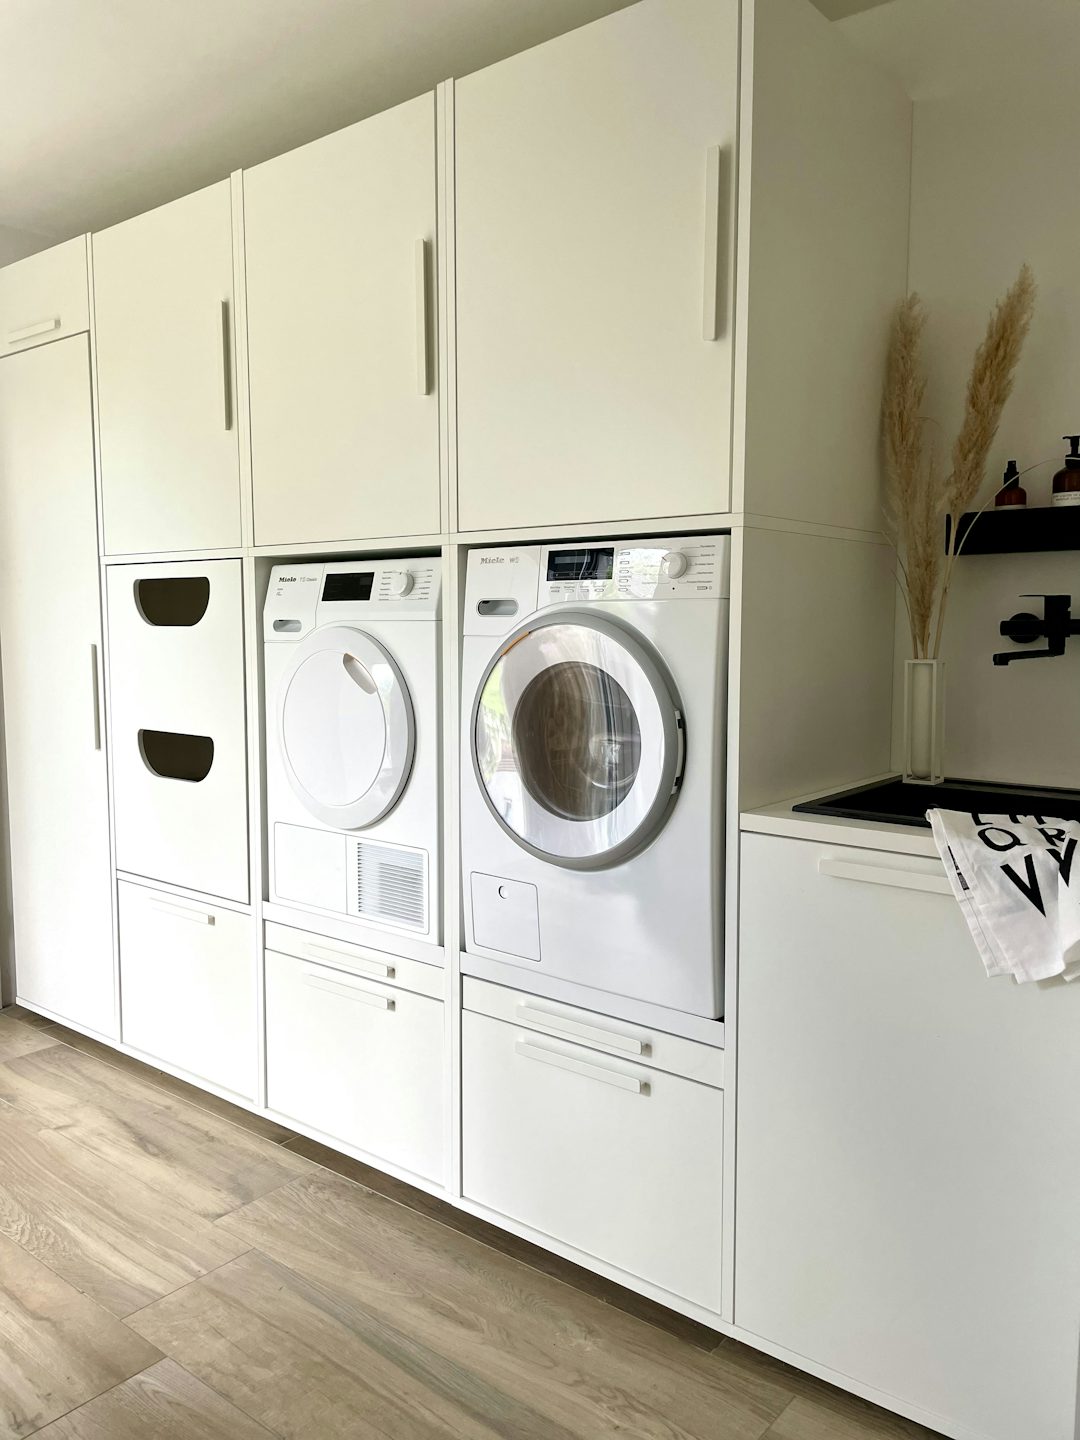 keukenblok wasmachine droger ombouw, kast inbouwen kan dankzij Wastoren met extra opbergruimte en op de ideale werkhoogte van 60 cm